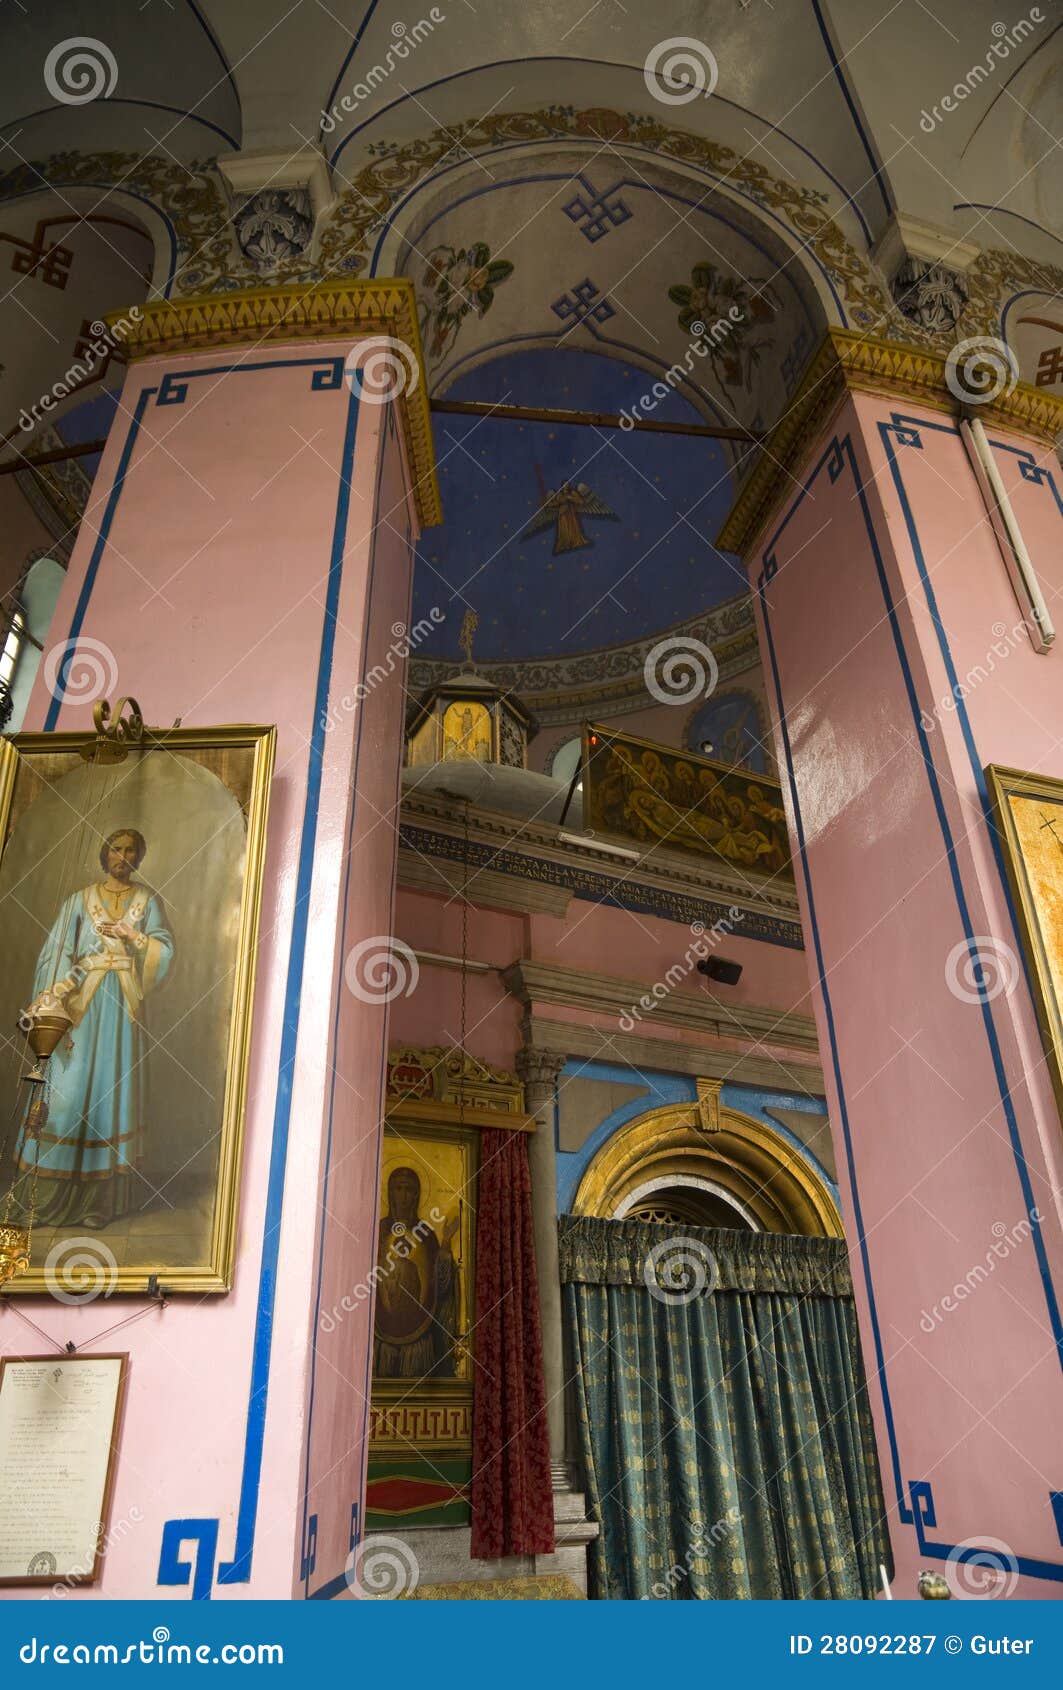  Ethiopian Church  Jerusalem Stock Image Image of ceiling 